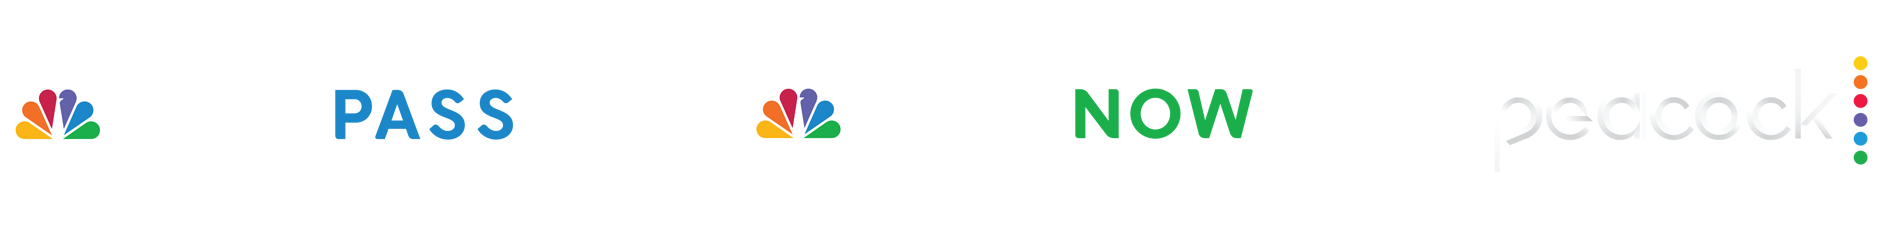 GolfPass x Peacock